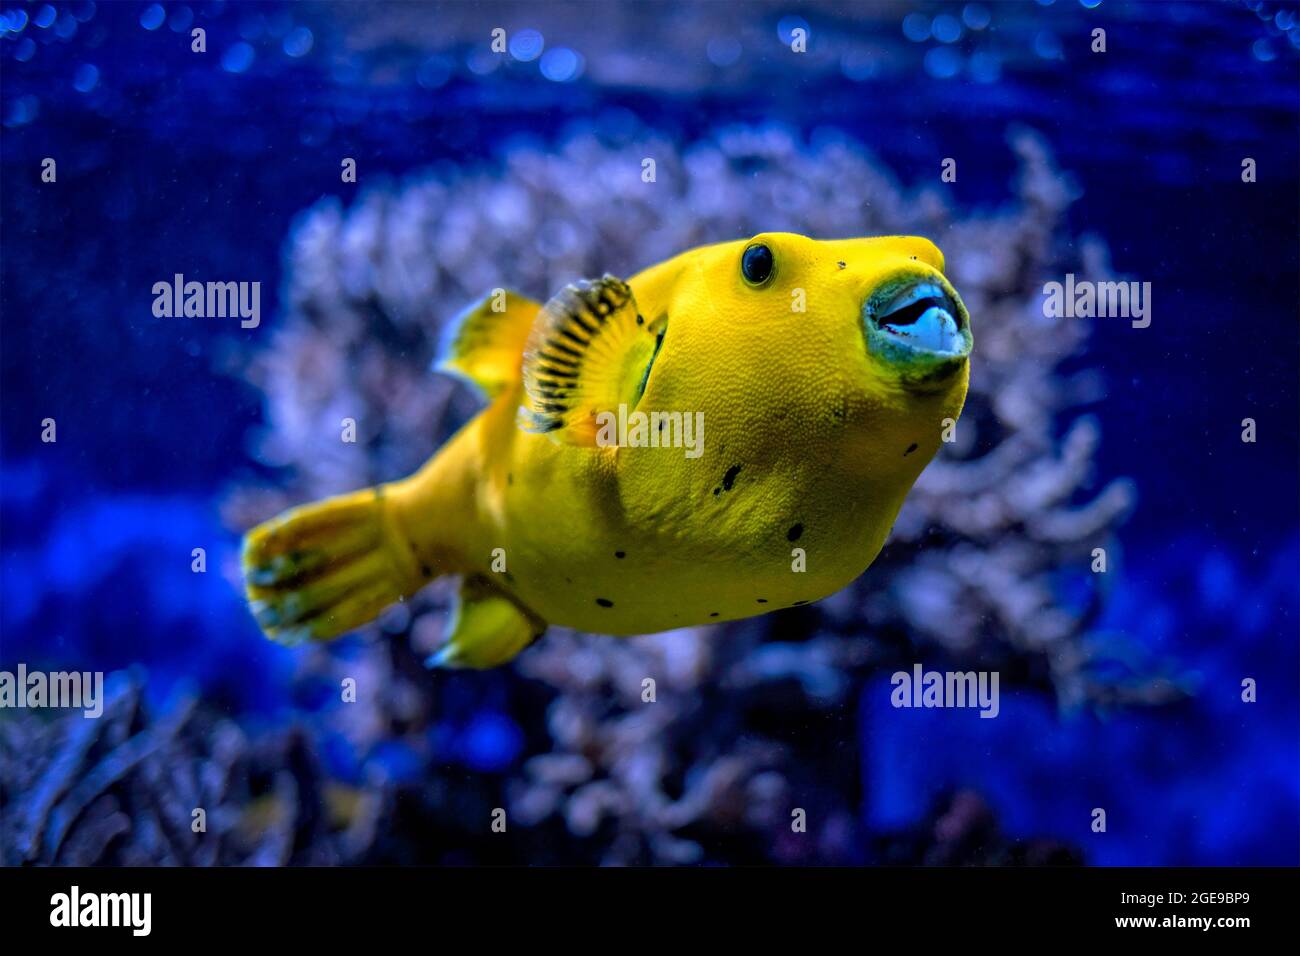 Yellow golden puffer guineafowl puffer fish underwater Stock Photo - Alamy